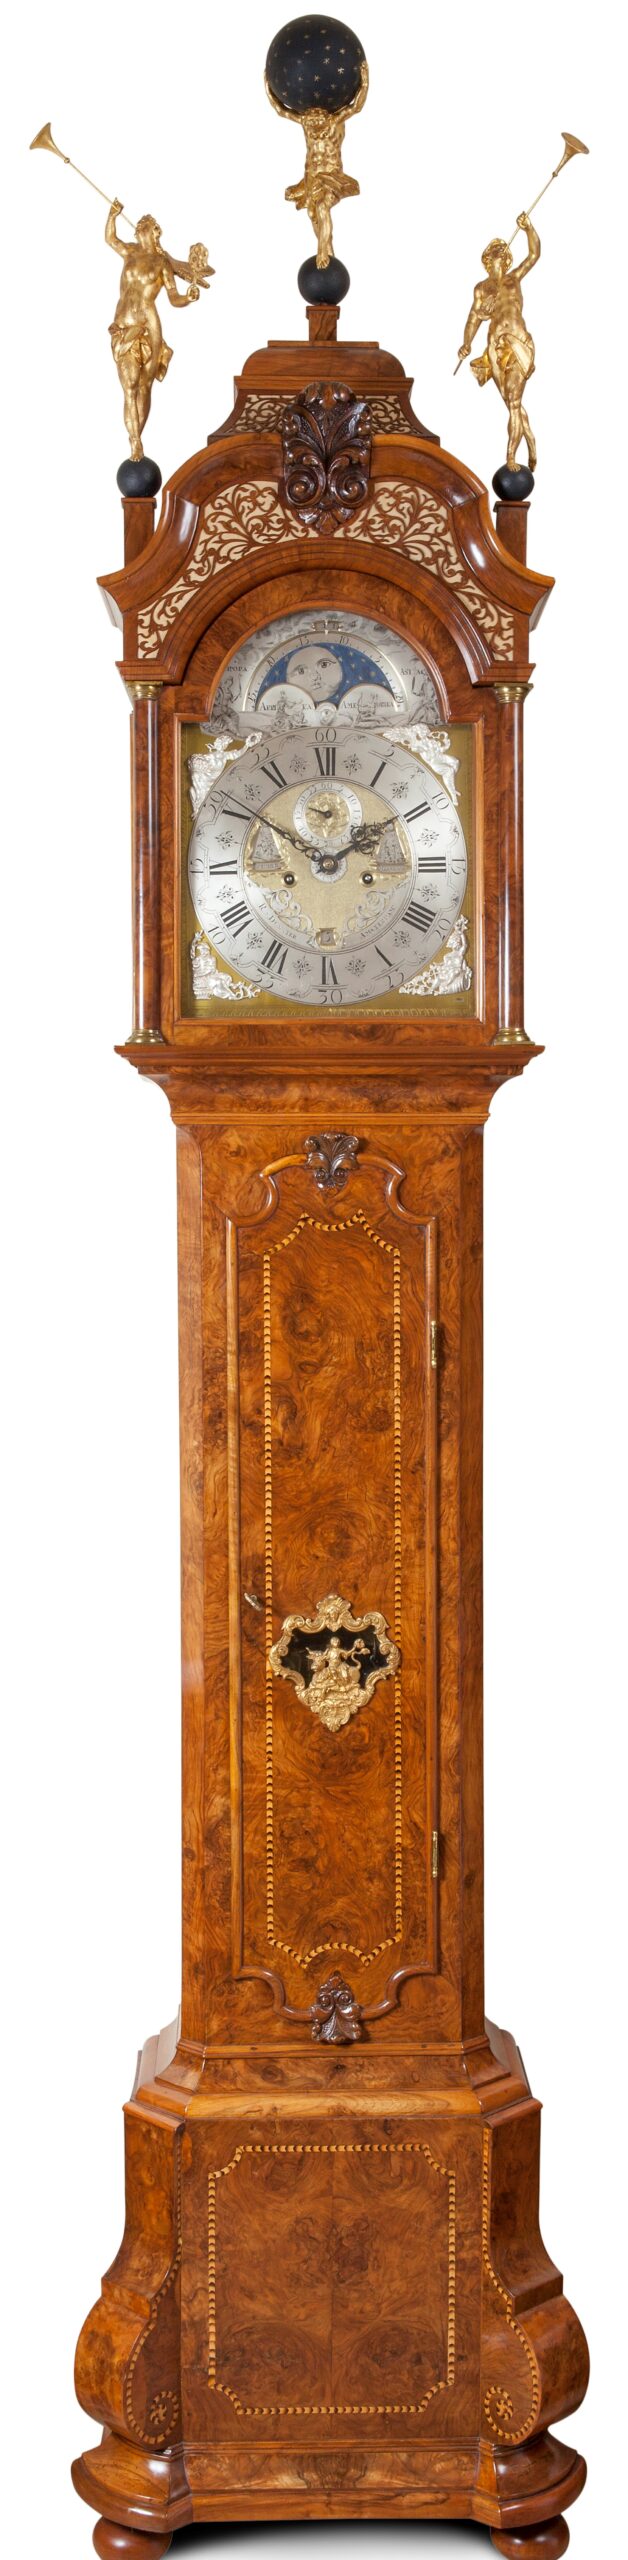 Oxideren Durf Verloren Collectie antieke klokken, staande klok Dunster 18e eeuw